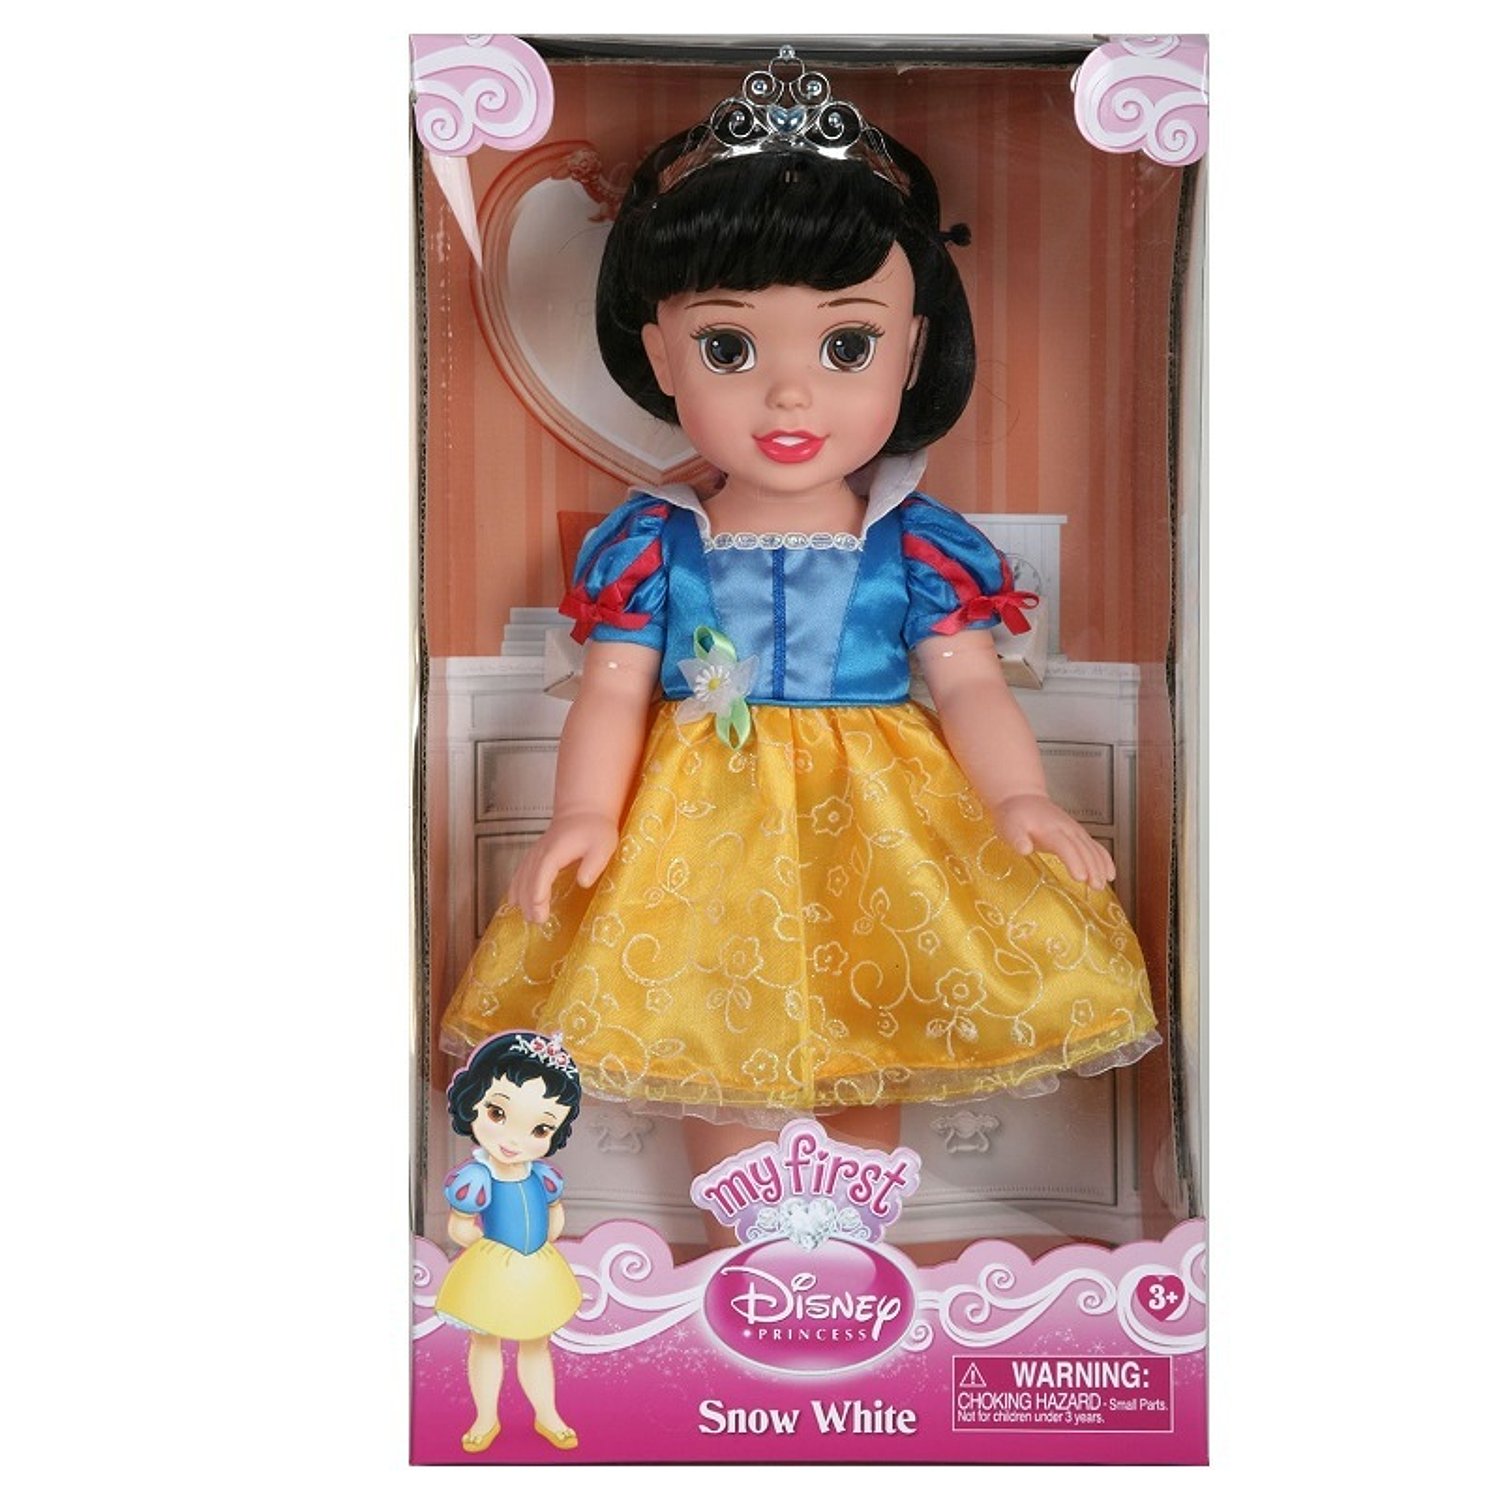 Принцесса малышка s класса слишком. Кукла 31 см принцесса Дисней малышка, 751170. Кукла Disney принцесса малышка 31 см 75122 751170. Кукла Белоснежка принцесса малышка Дисней. Кукла 31 см принцессы Дисней малышка с украшениями, 791820.